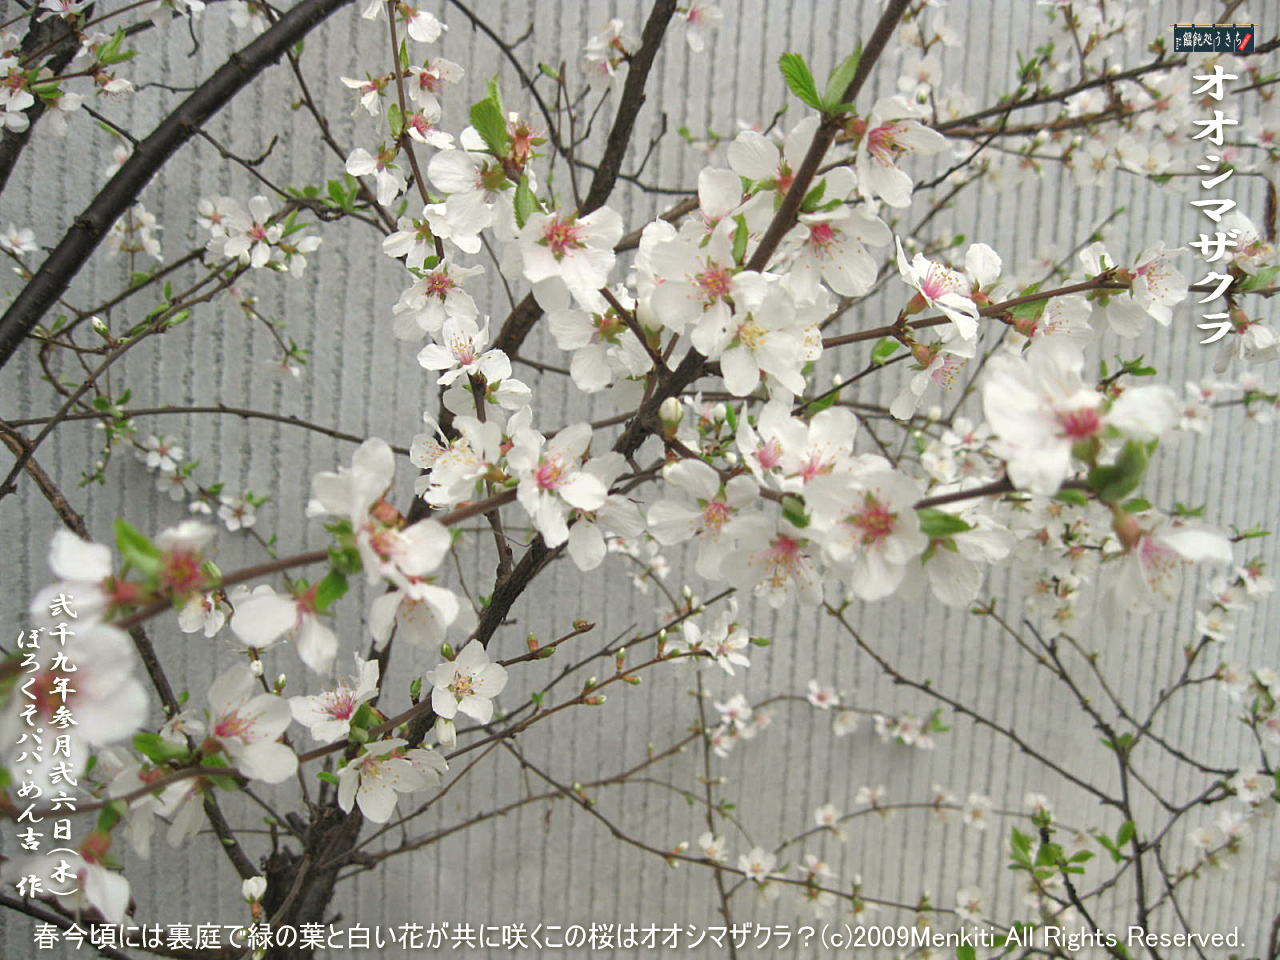 3／26（木）【オオシマザクラ・大島桜】春今頃には裏庭で緑の葉と白い花が共に咲くこの桜はオオシマザクラ？＠キャツピ＆めん吉の【ぼろくそパパの独り言】
　　　　▼クリックで1280x960pxlsに拡大します。